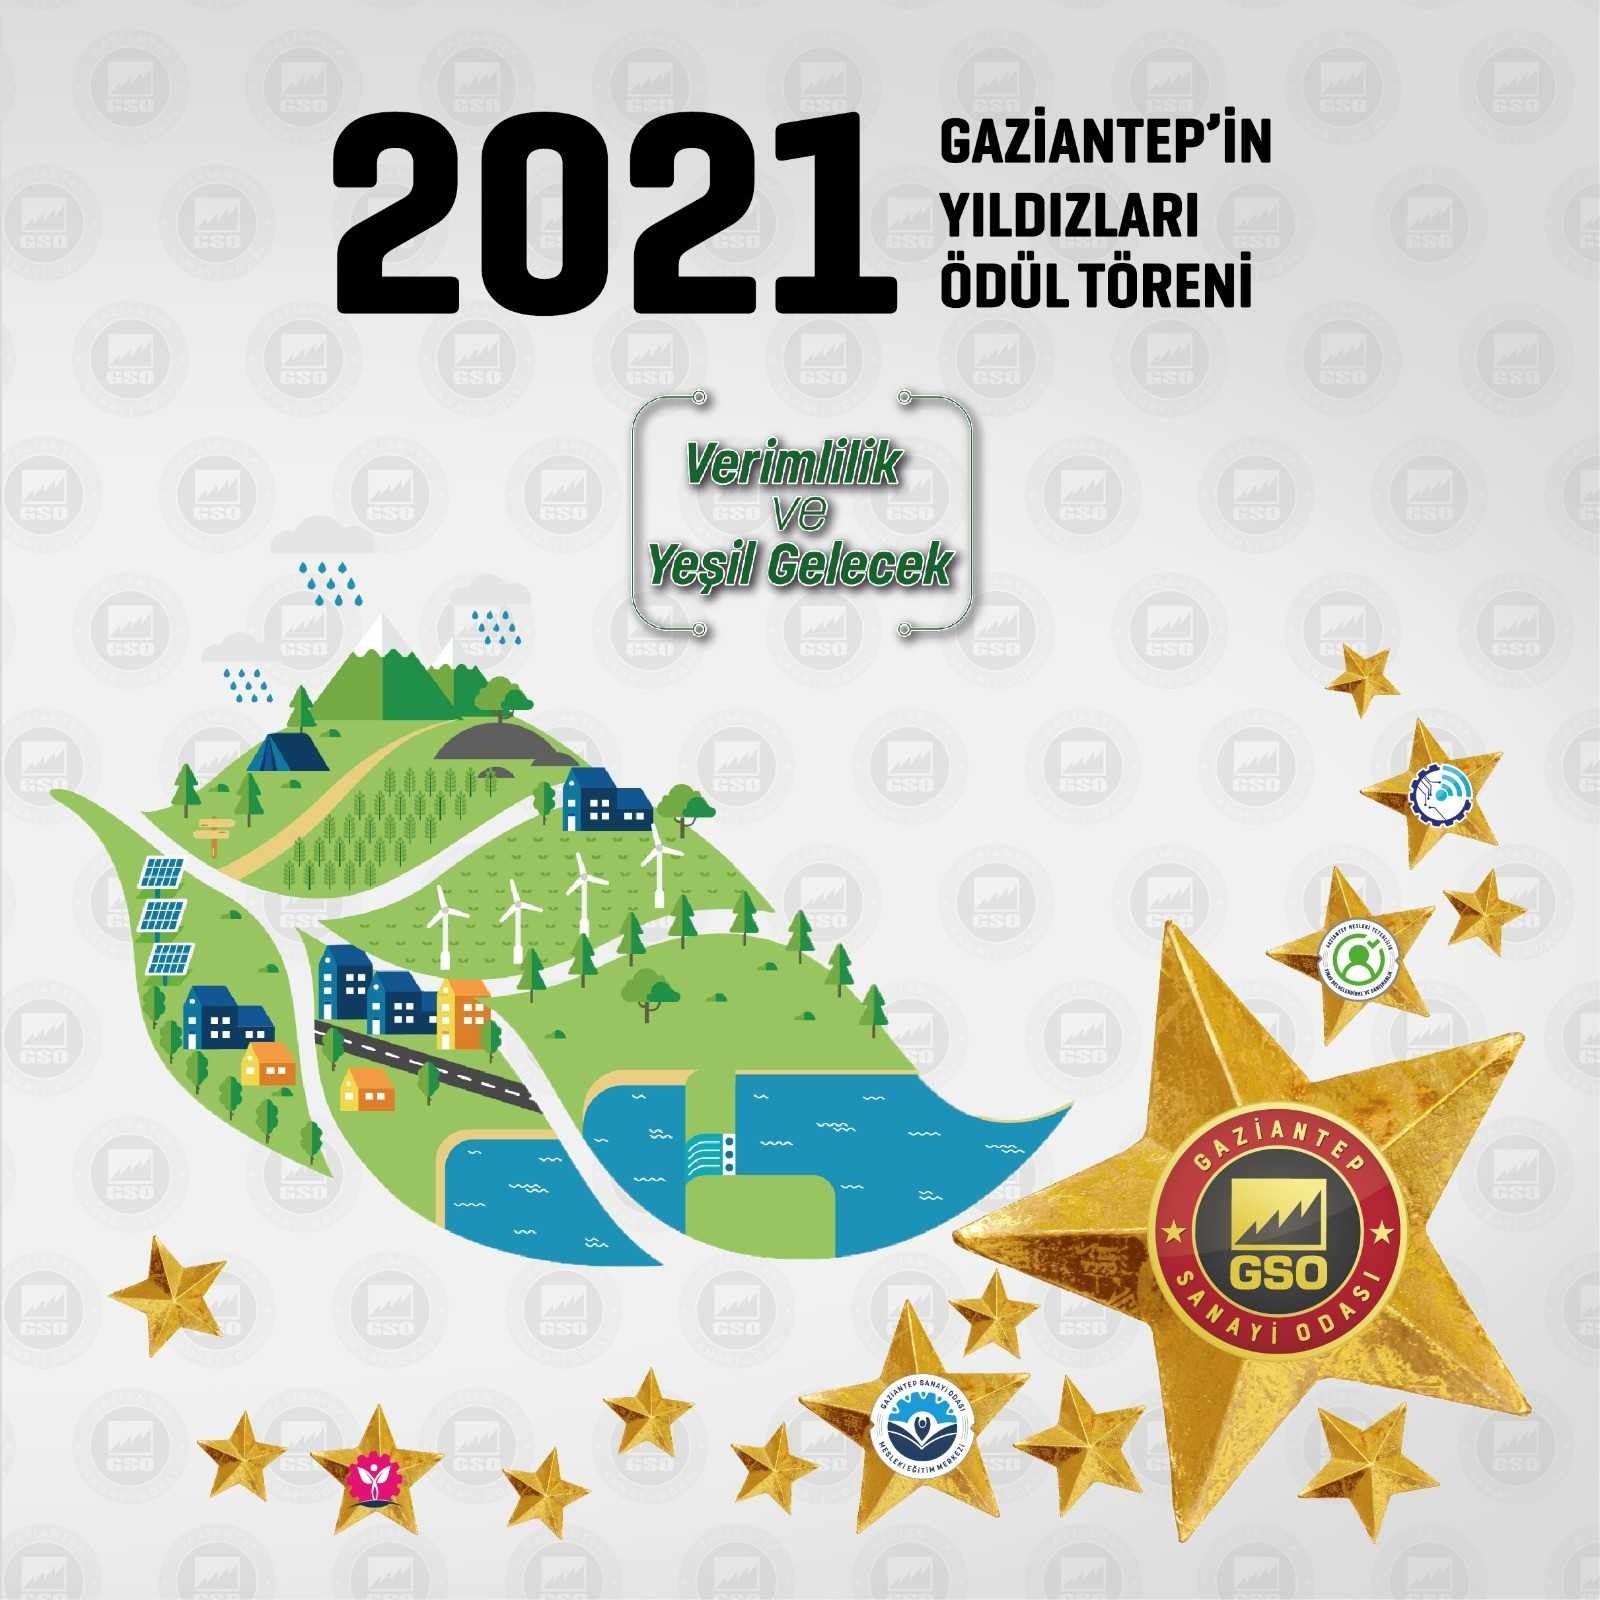 Gaziantep’in yıldızları 6 Ekim’de ödüllerini alacak #gaziantep